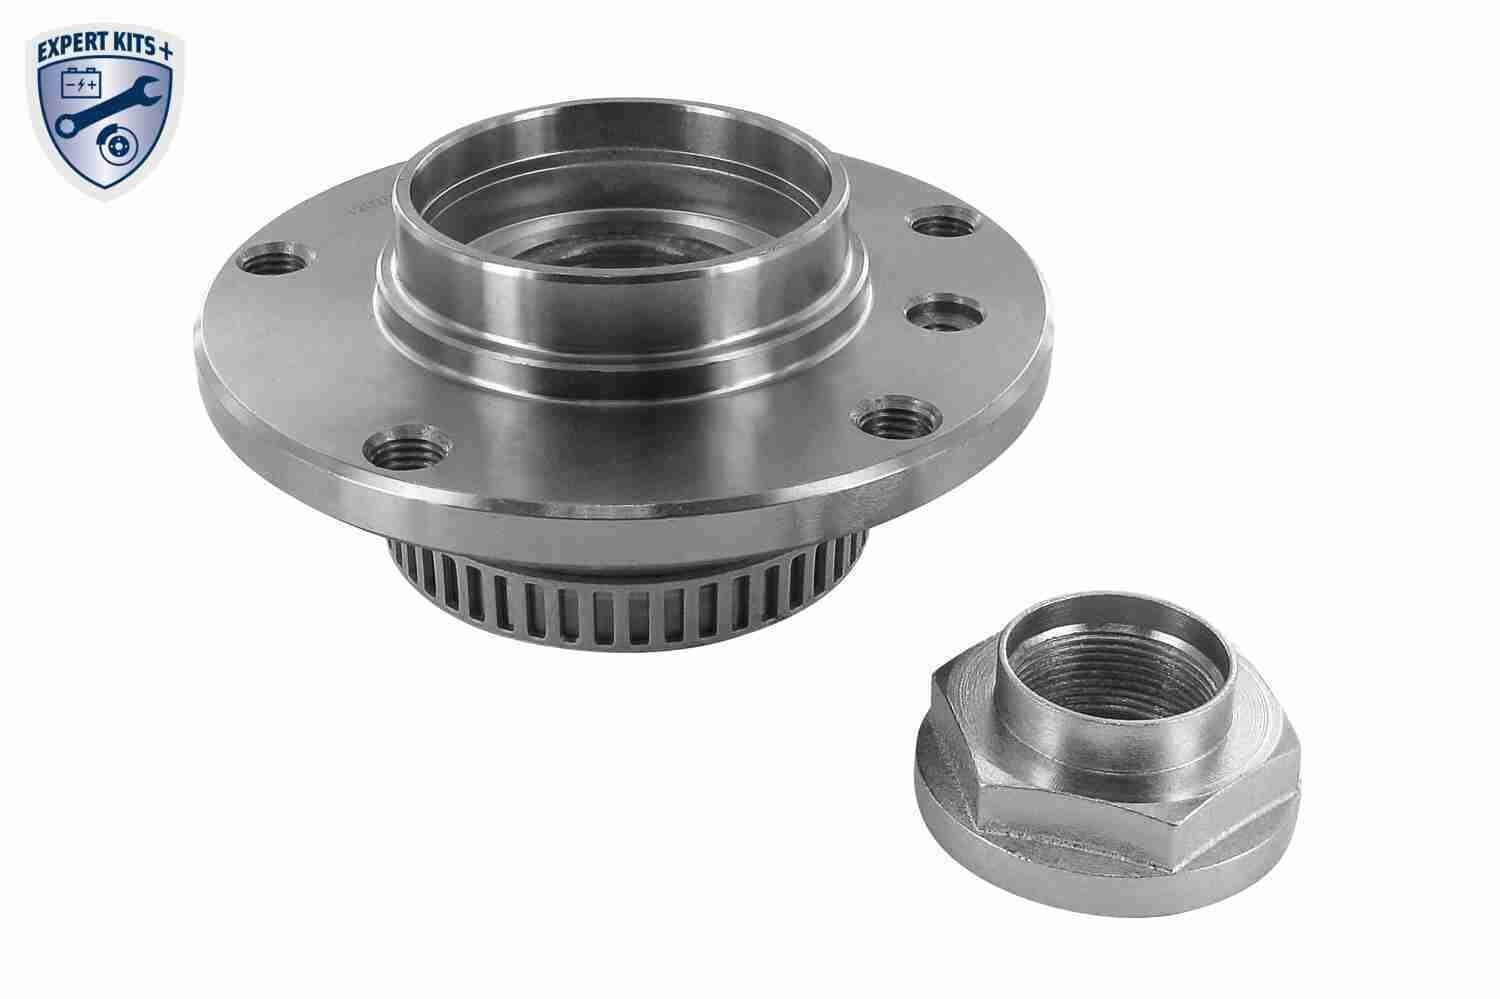 Wheel hub bearing VAICO Front Axle, EXPERT KITS +, 139 mm - V20-0516